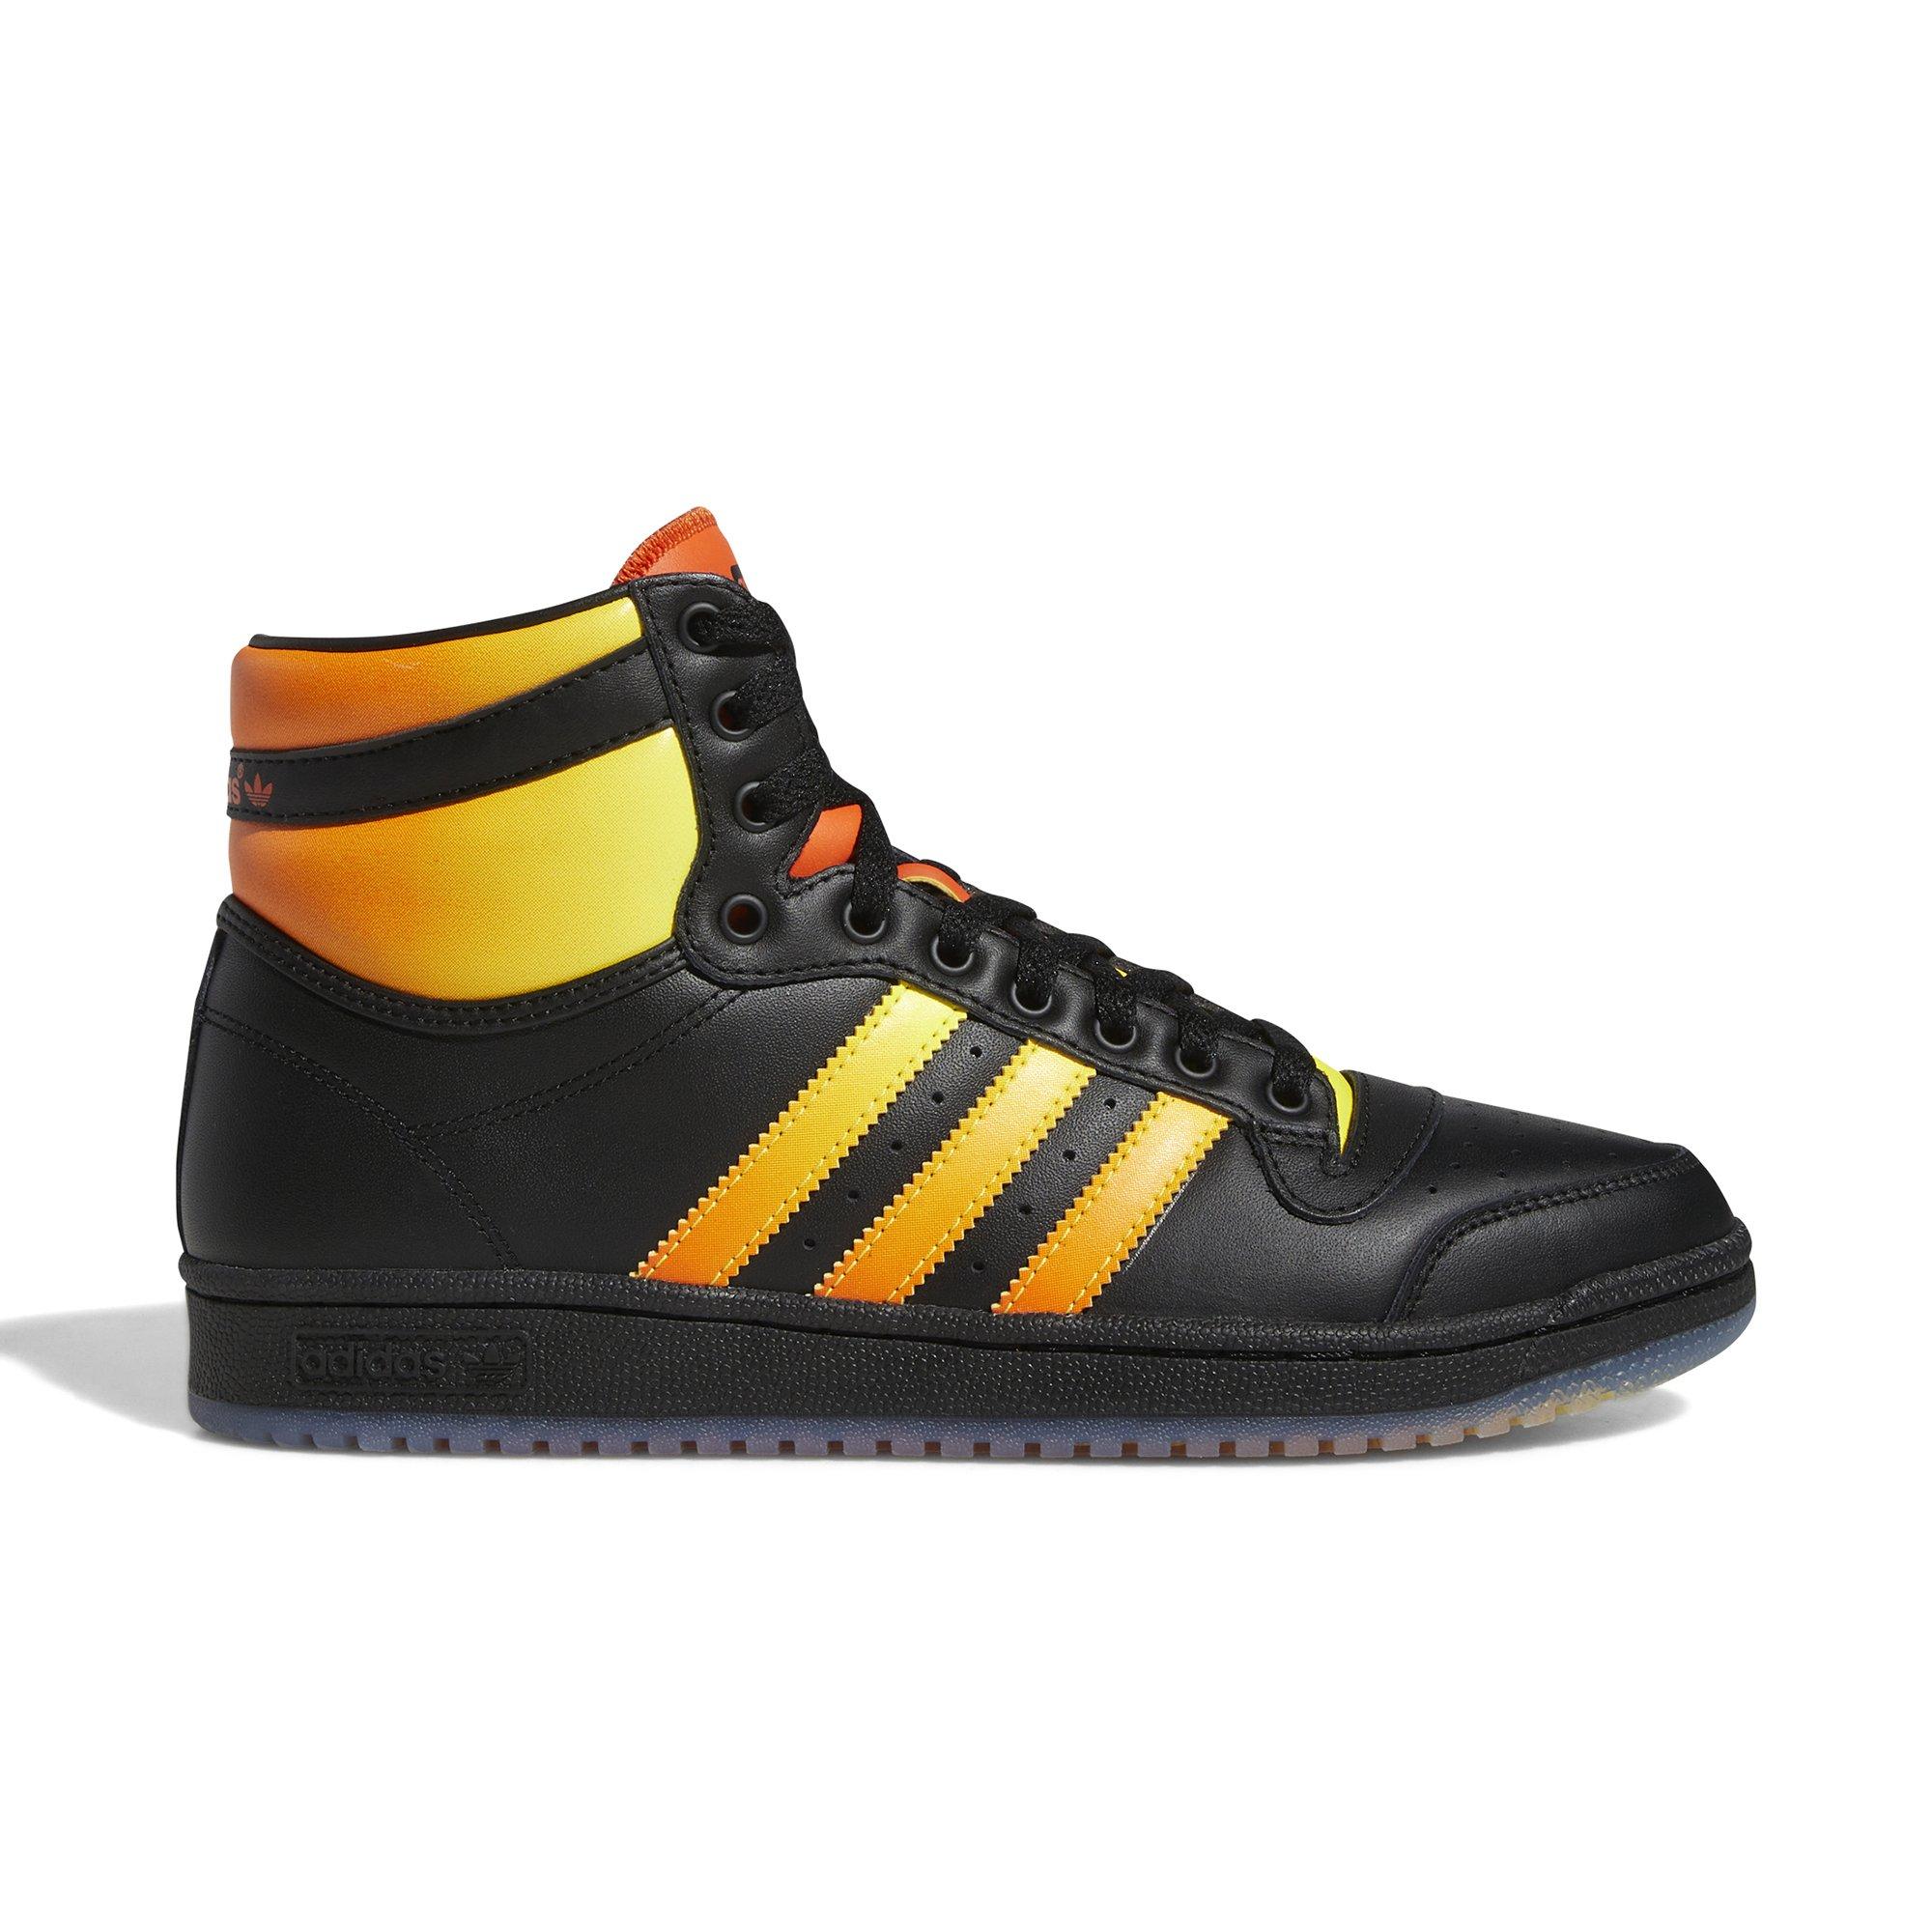 Intento mayoria Capataz adidas Top Ten Hi "Black/Semi Orange" Men's Shoe